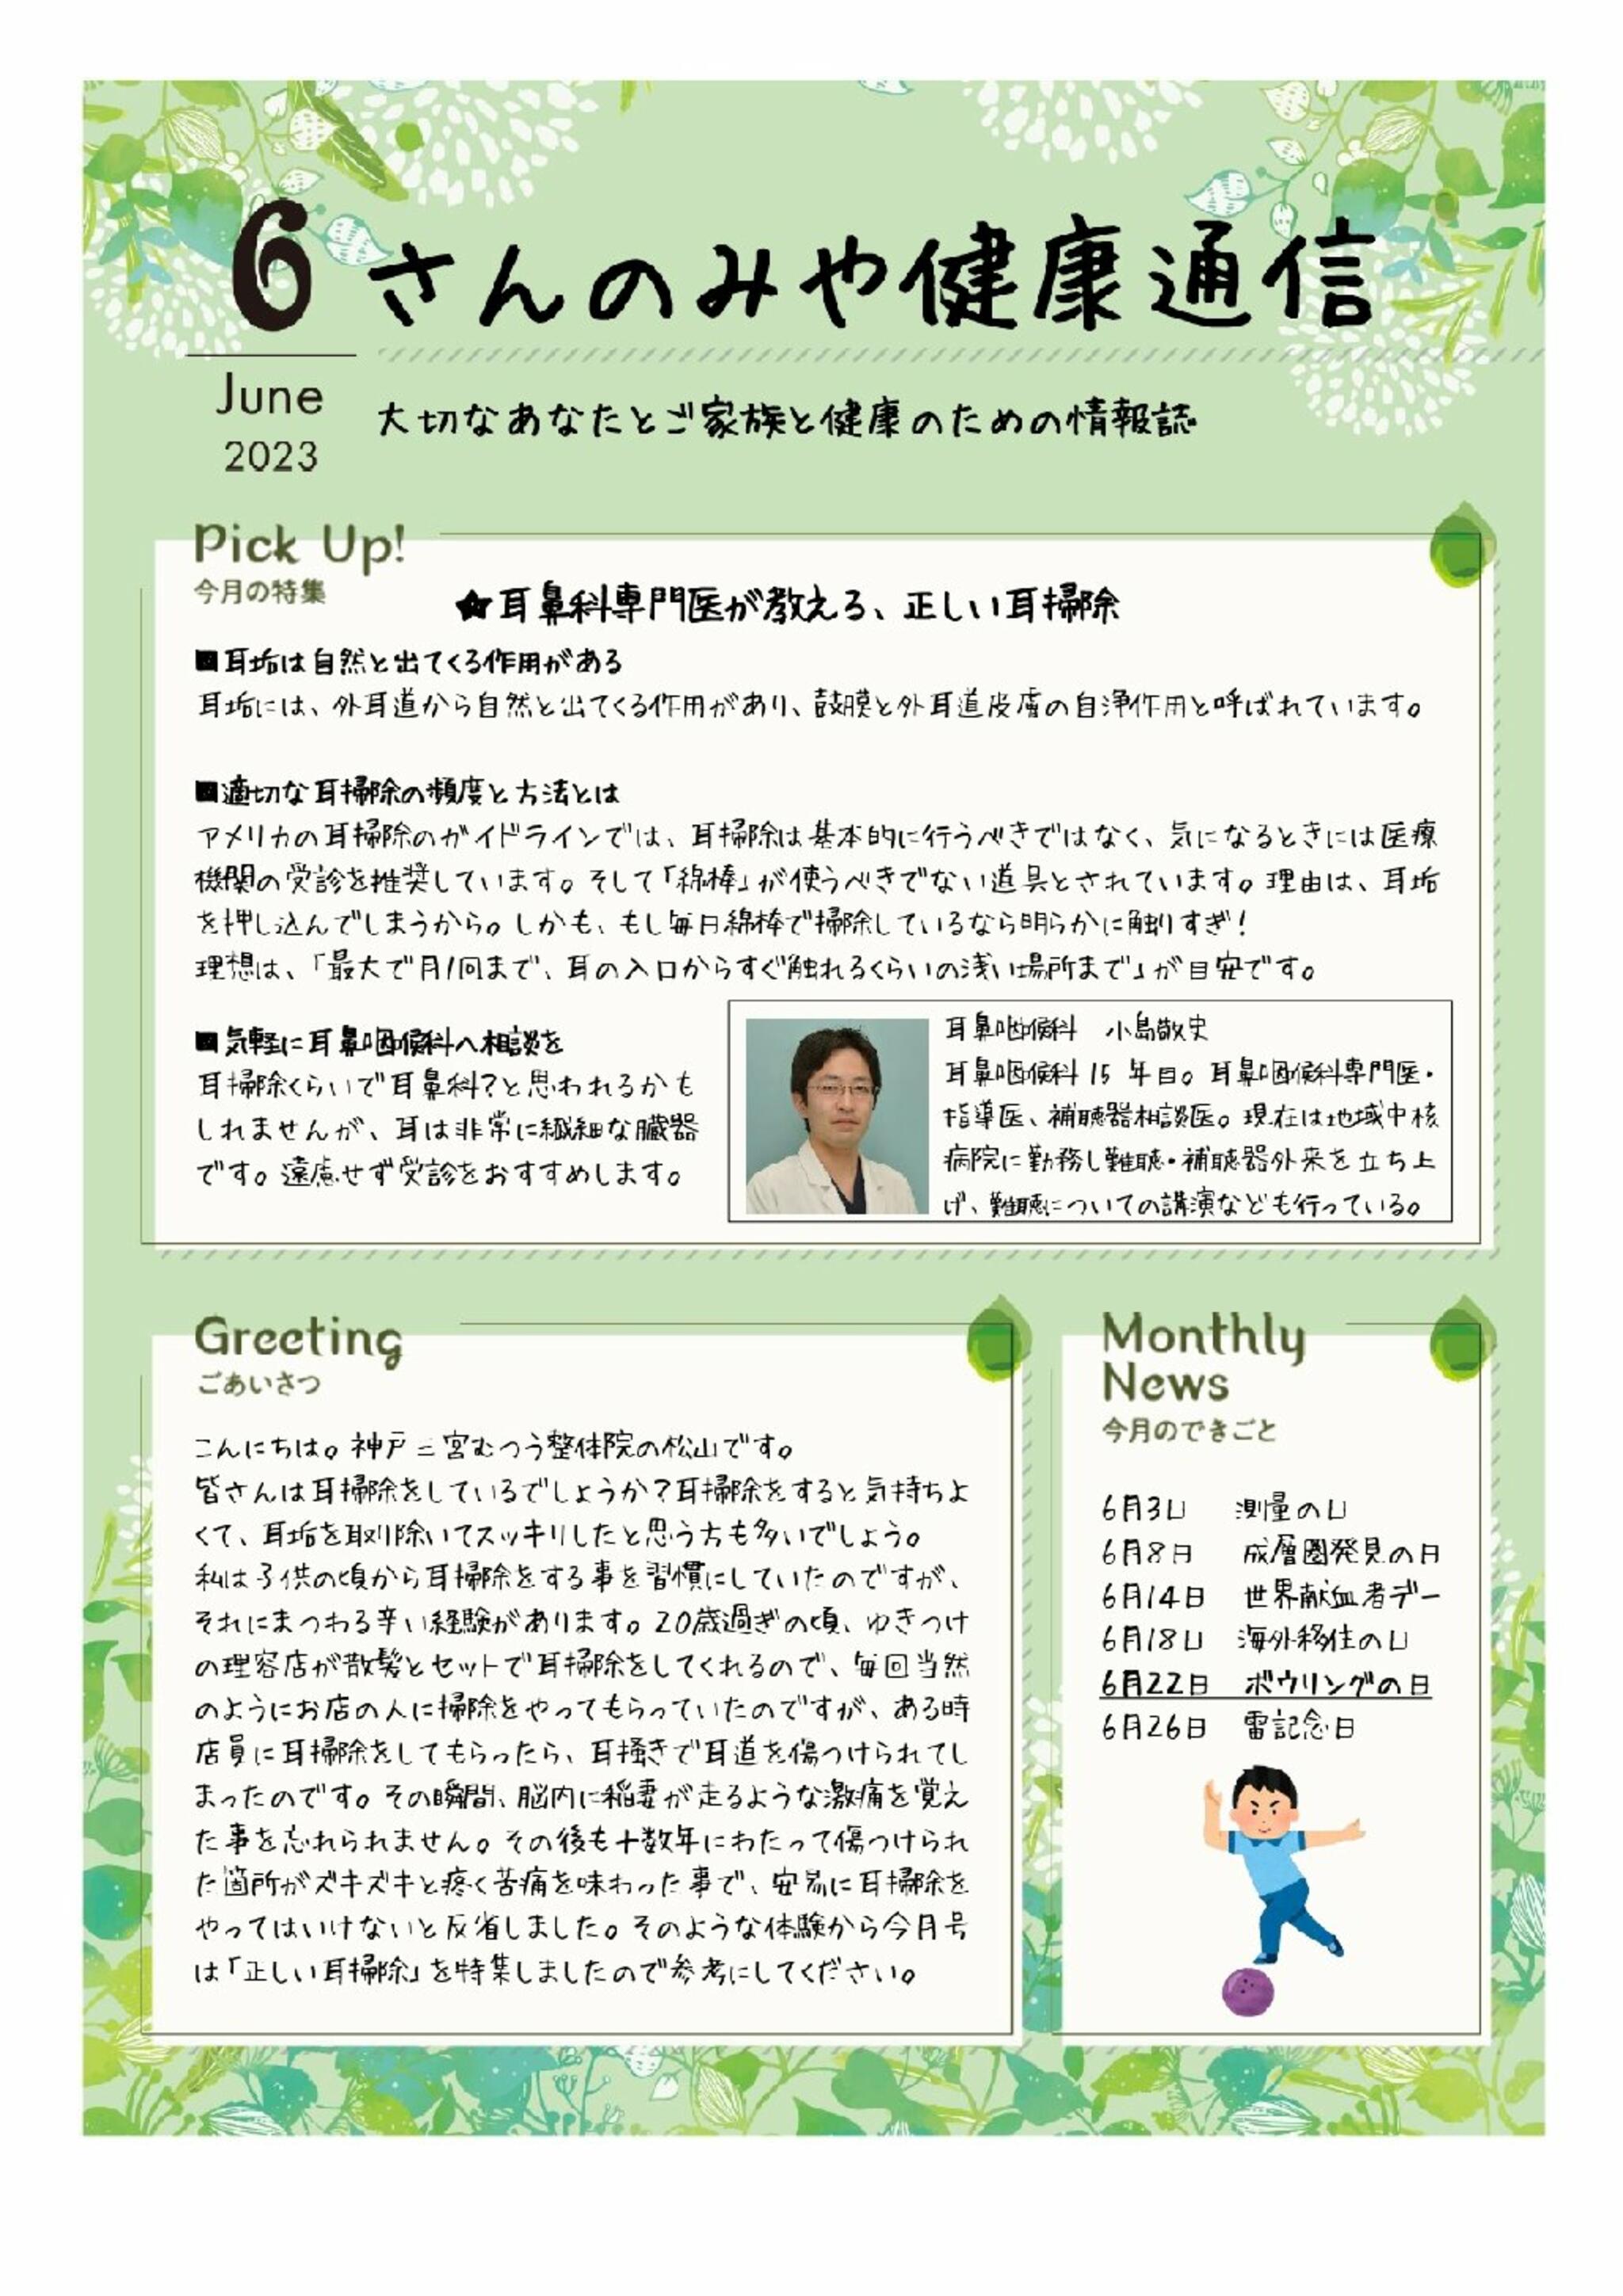 神戸三宮むつう整体院からのお知らせ(正しい耳掃除について)に関する写真